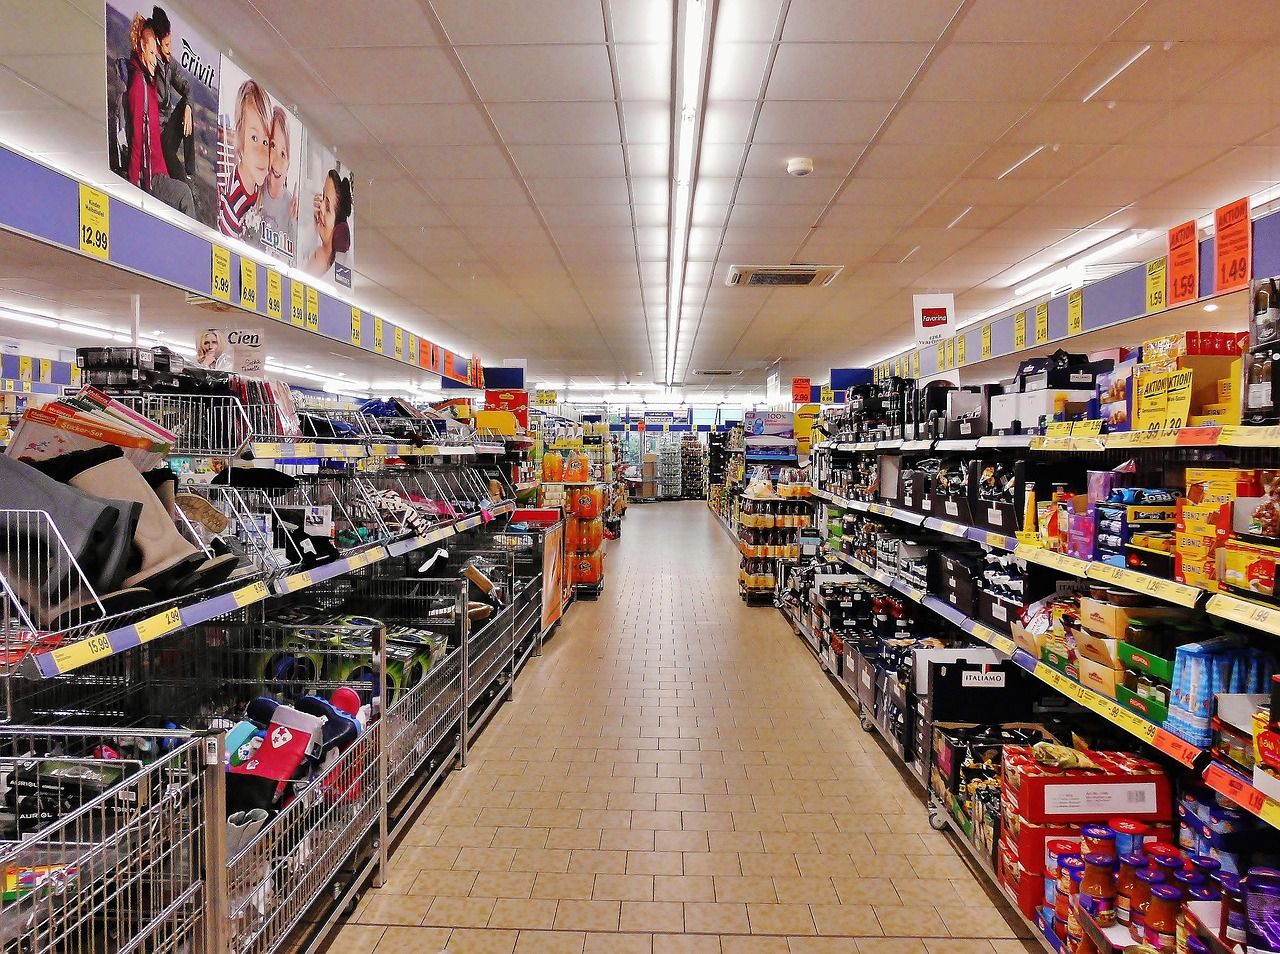 Una banda di ladri lo scorso 15 novembre si è intrufolata nel supermercato Todis provando a rubare la cassa. Indagini in corso.